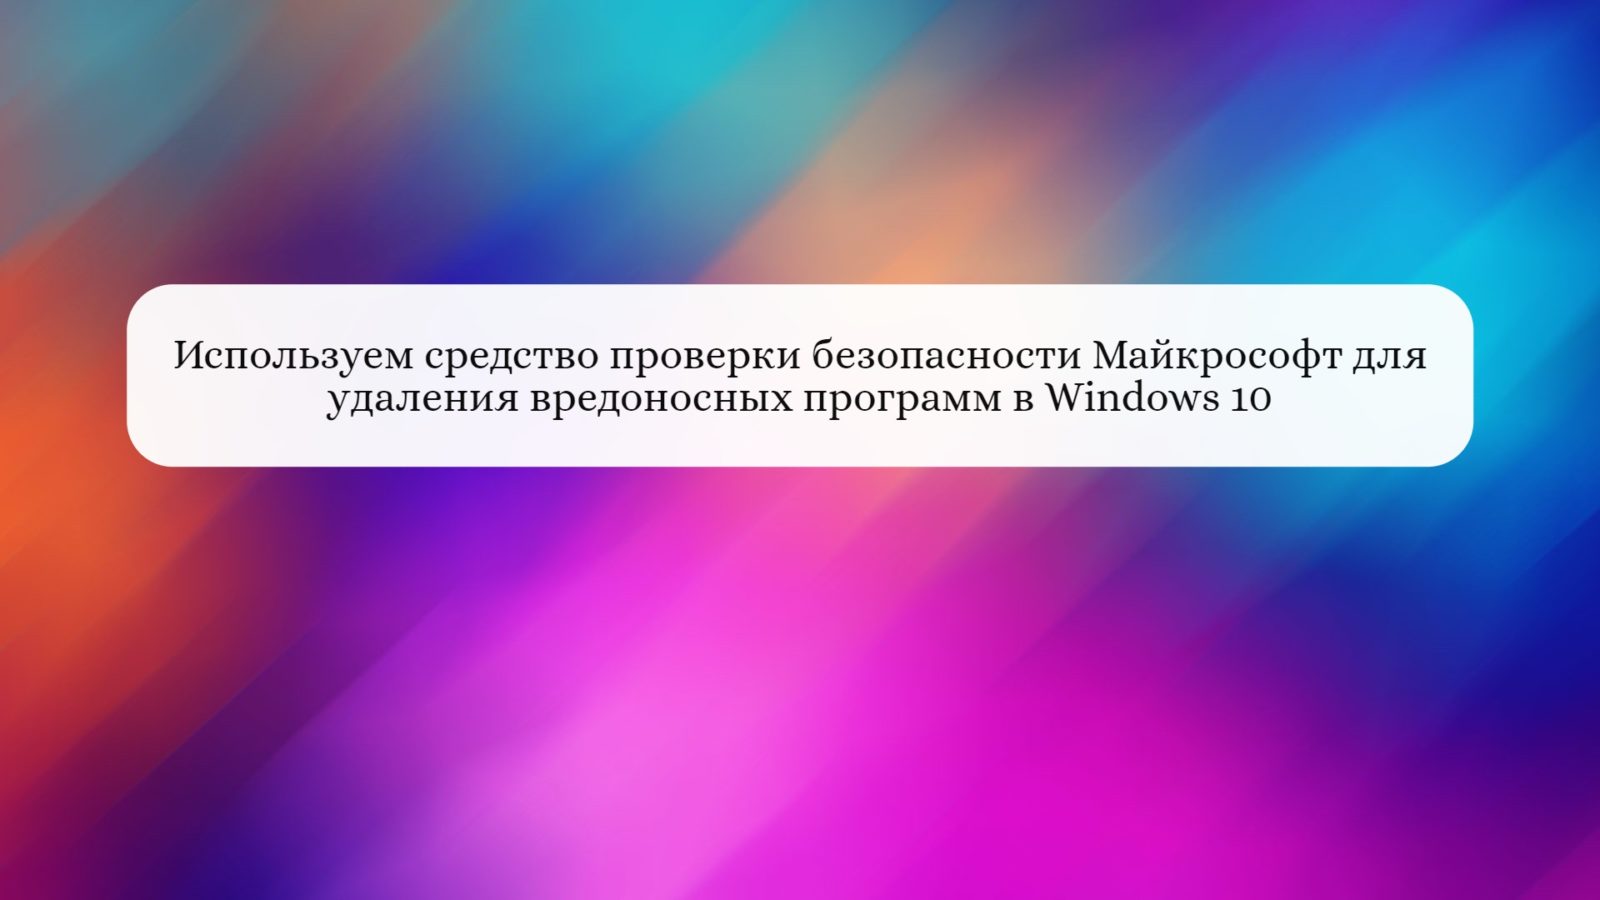 Используем средство проверки безопасности Майкрософт для удаления вредоносных программ в Windows 10